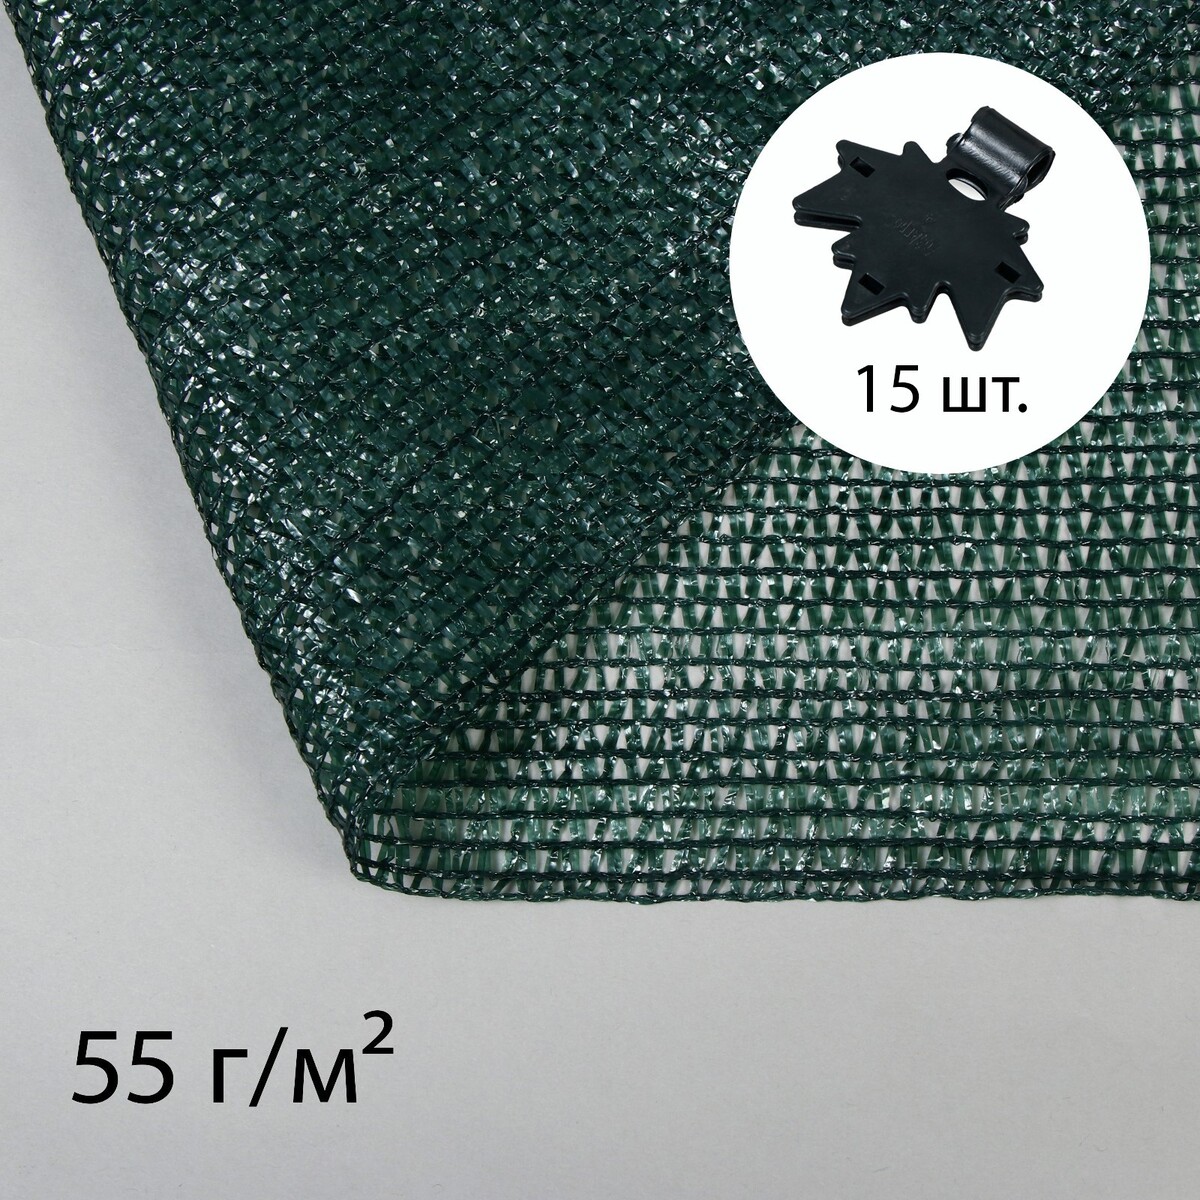 Сетка затеняющая, 5 × 2 м, плотность 55 г/м², зеленая, в наборе 15 клипс сетка затеняющая маскировочная зелёно бежевая плотность 40 г м² длина 6 м ширина 3 м